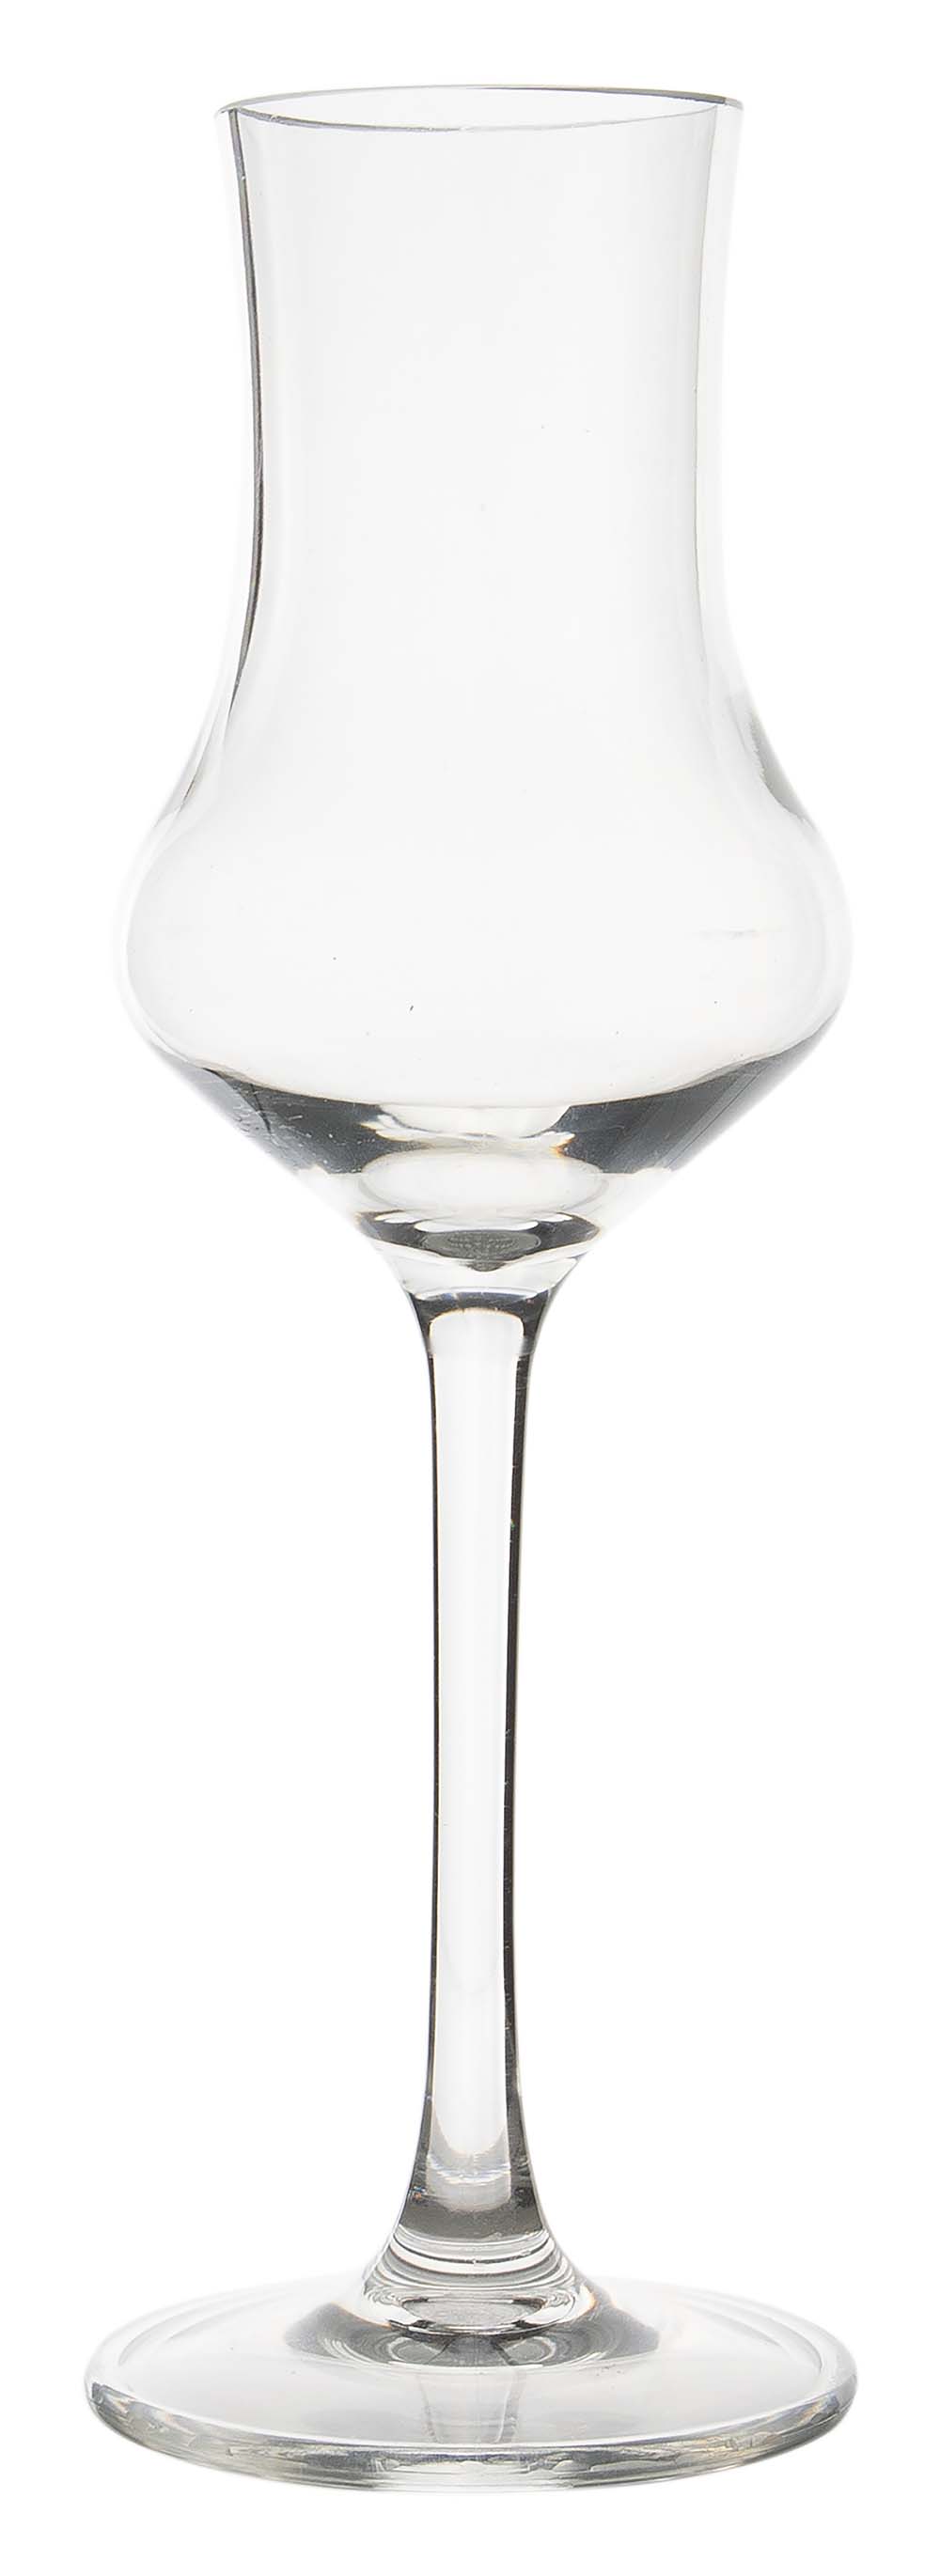 6911165 Een grappa glas uit de Royal line collectie. Vrijwel onbreekbaar door hoogwaardig MS materiaal. Bestaat uit een set van 2 stuks. Zeer gemakkelijk te reinigen en langdurig te gebruiken, wat het glas erg duurzaam maakt. Daarnaast is het grappa glas lichtgewicht en krasbestendig. Inhoud: 100 ml.